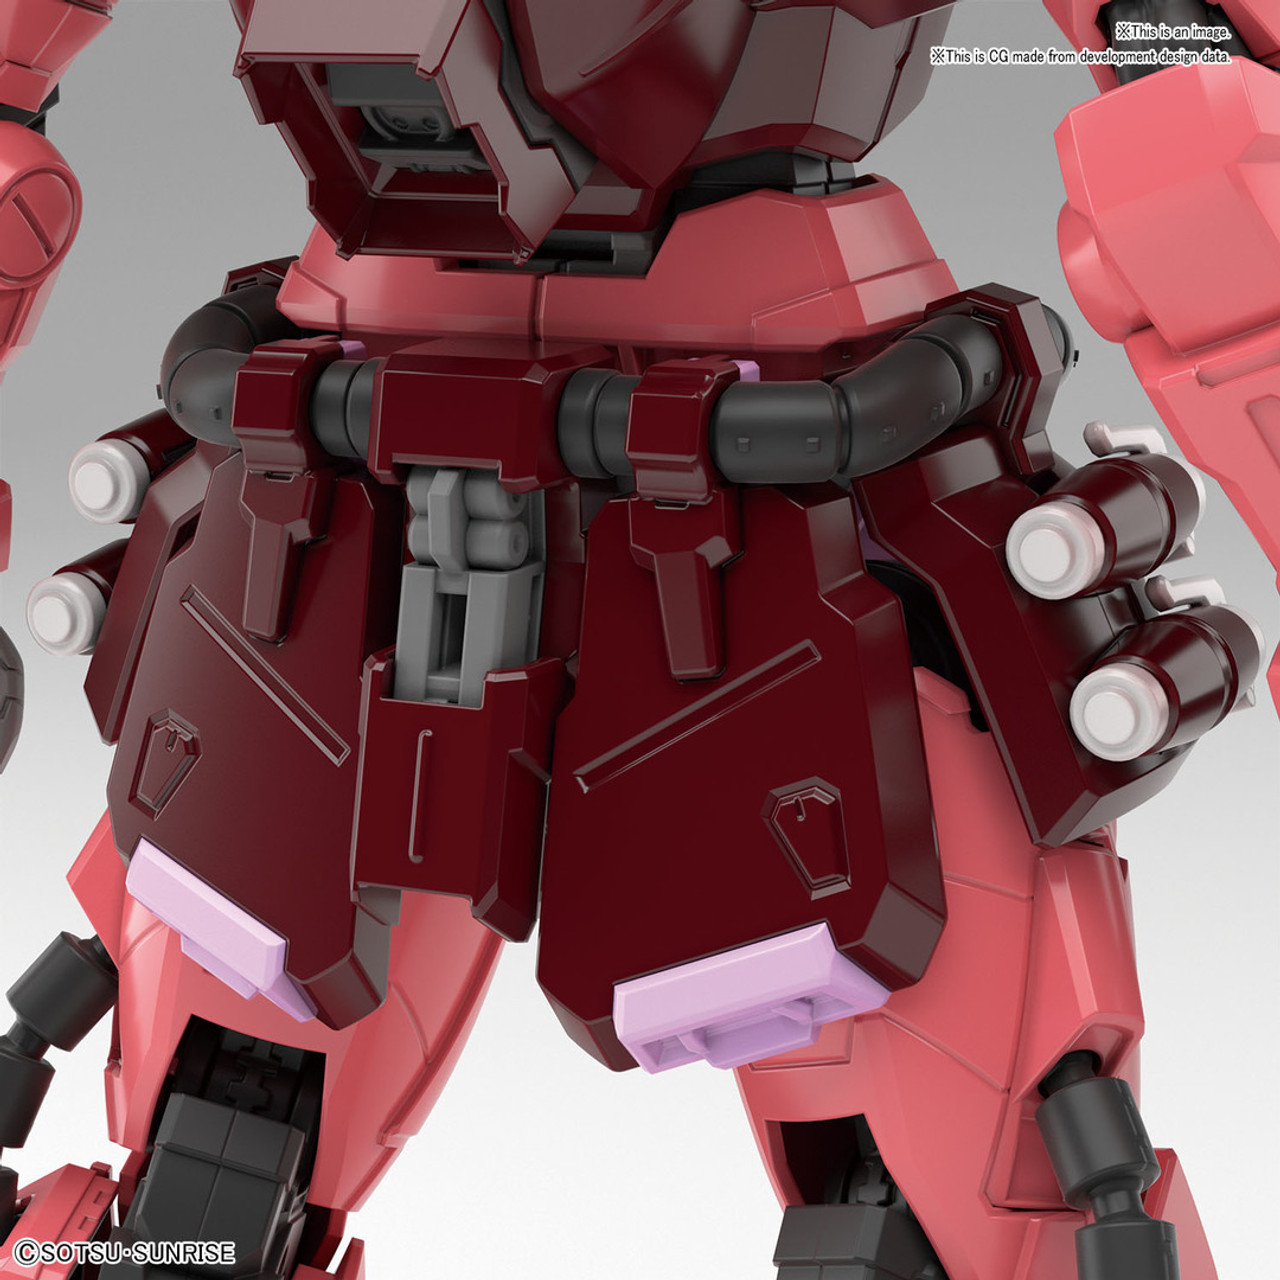 BAN2477807 Bandai MG 1/100 Gunner Zaku Warrior (Lunamaria Hawke Custom) 'Gundam SEED'